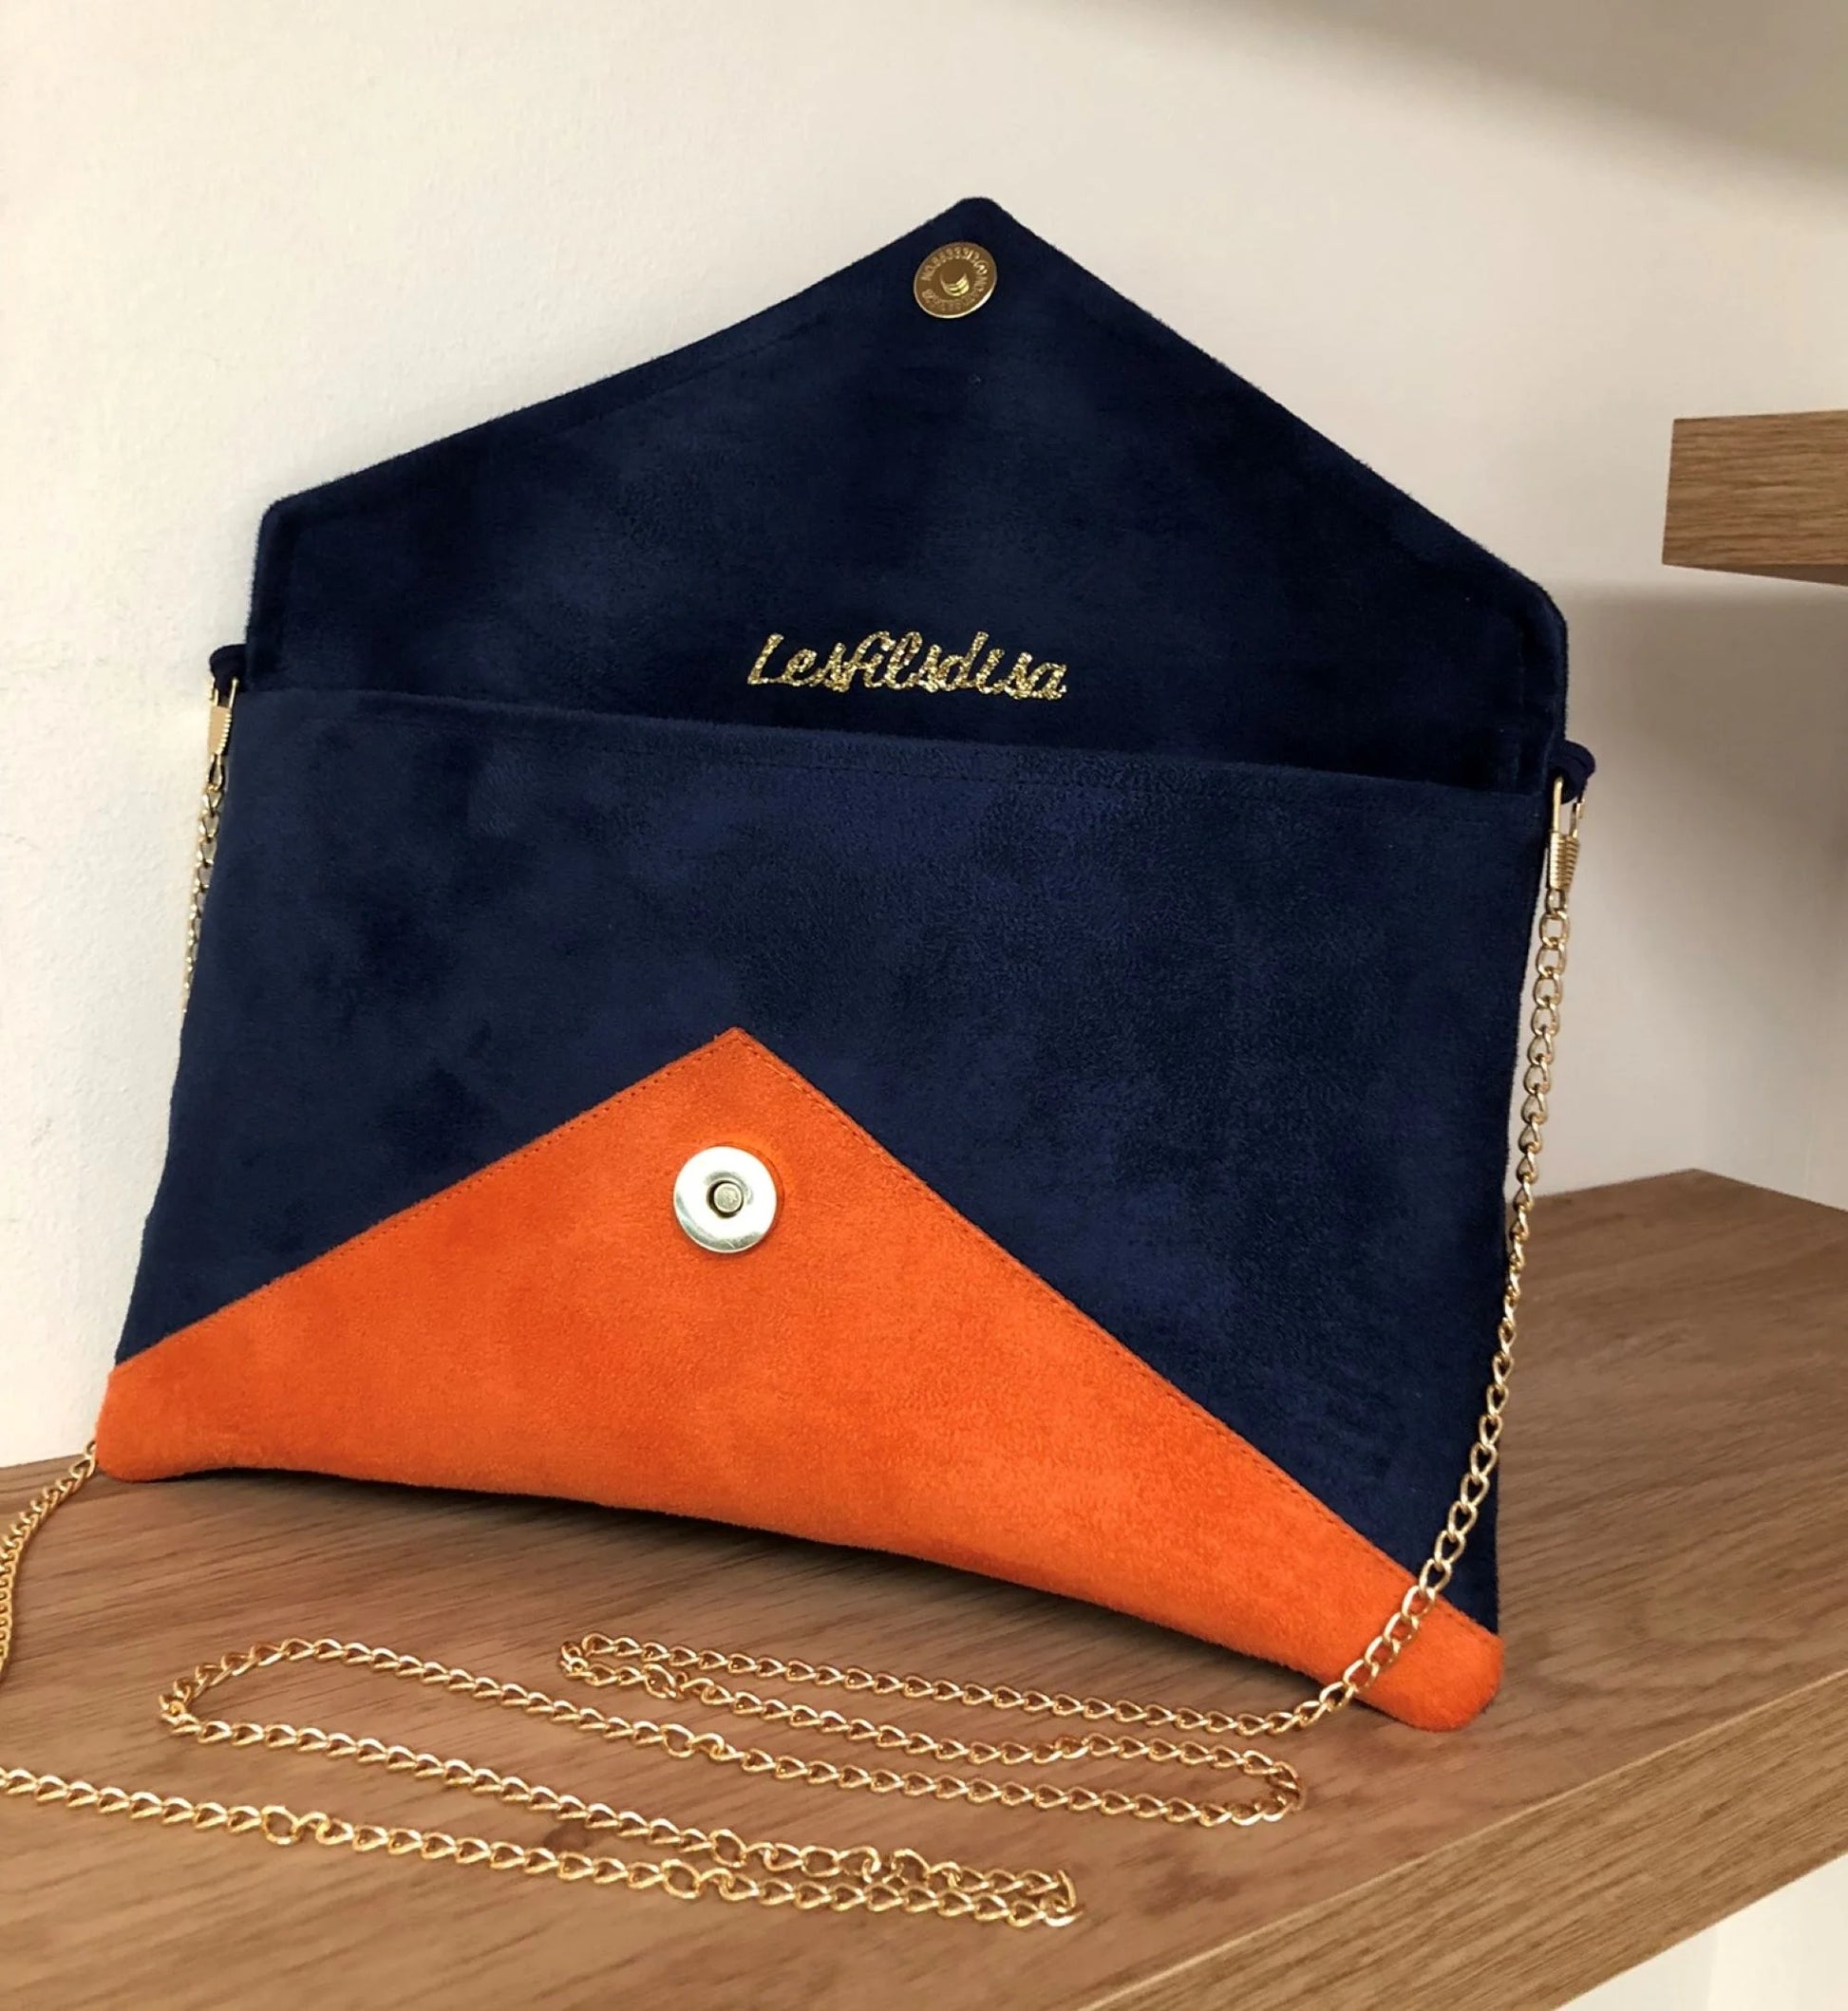 le sac pochette Isa bleu marine et orange à paillettes dorées, ouvert, avec chainette amovible.